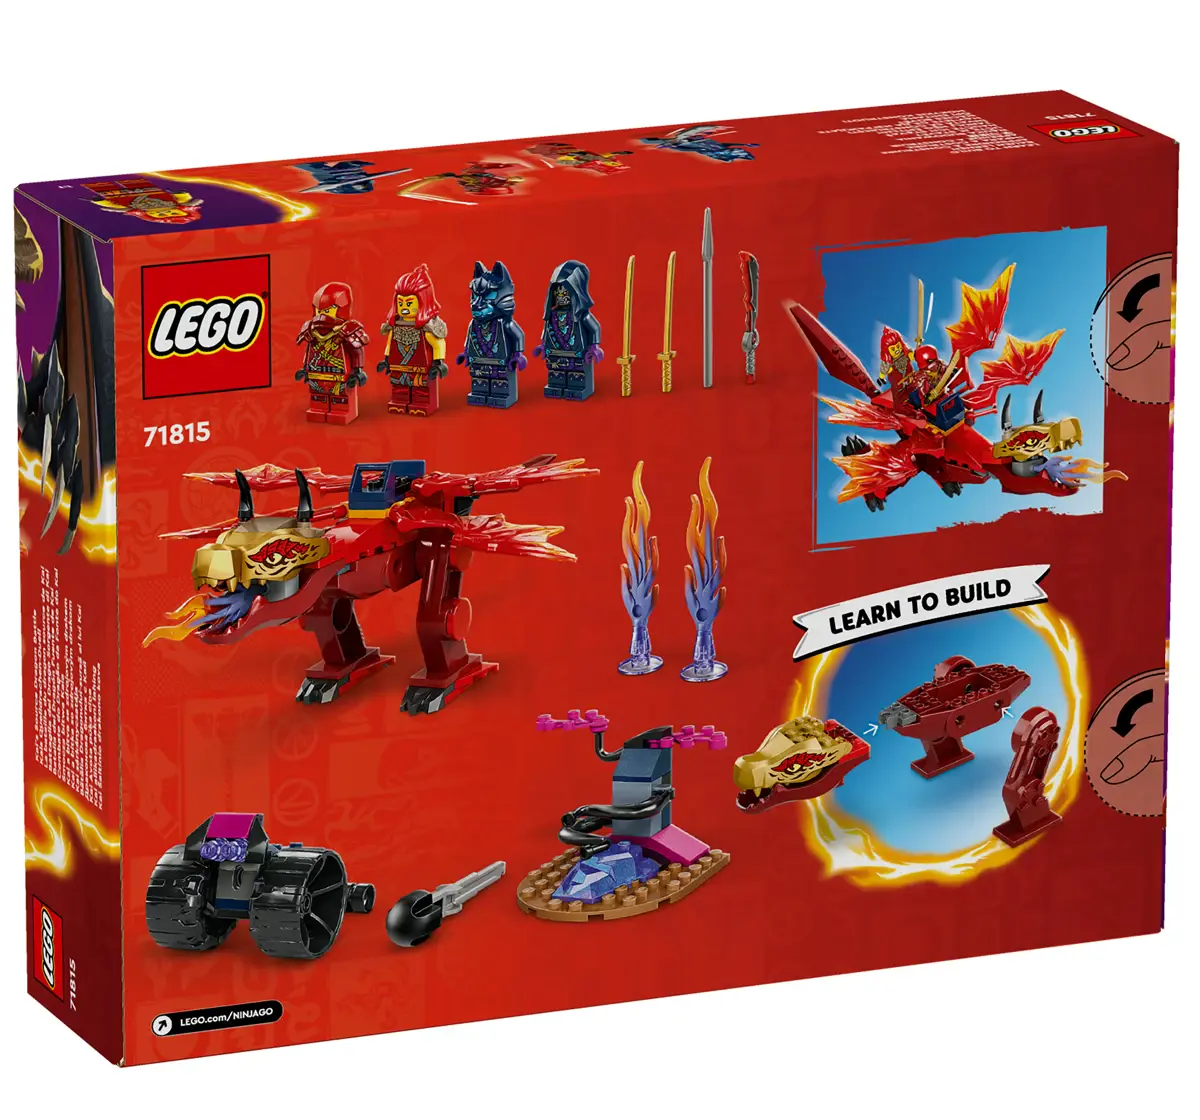 LEGO NINJAGO Kais Source Dragon Battle Set 71815 (1212 Pieces)